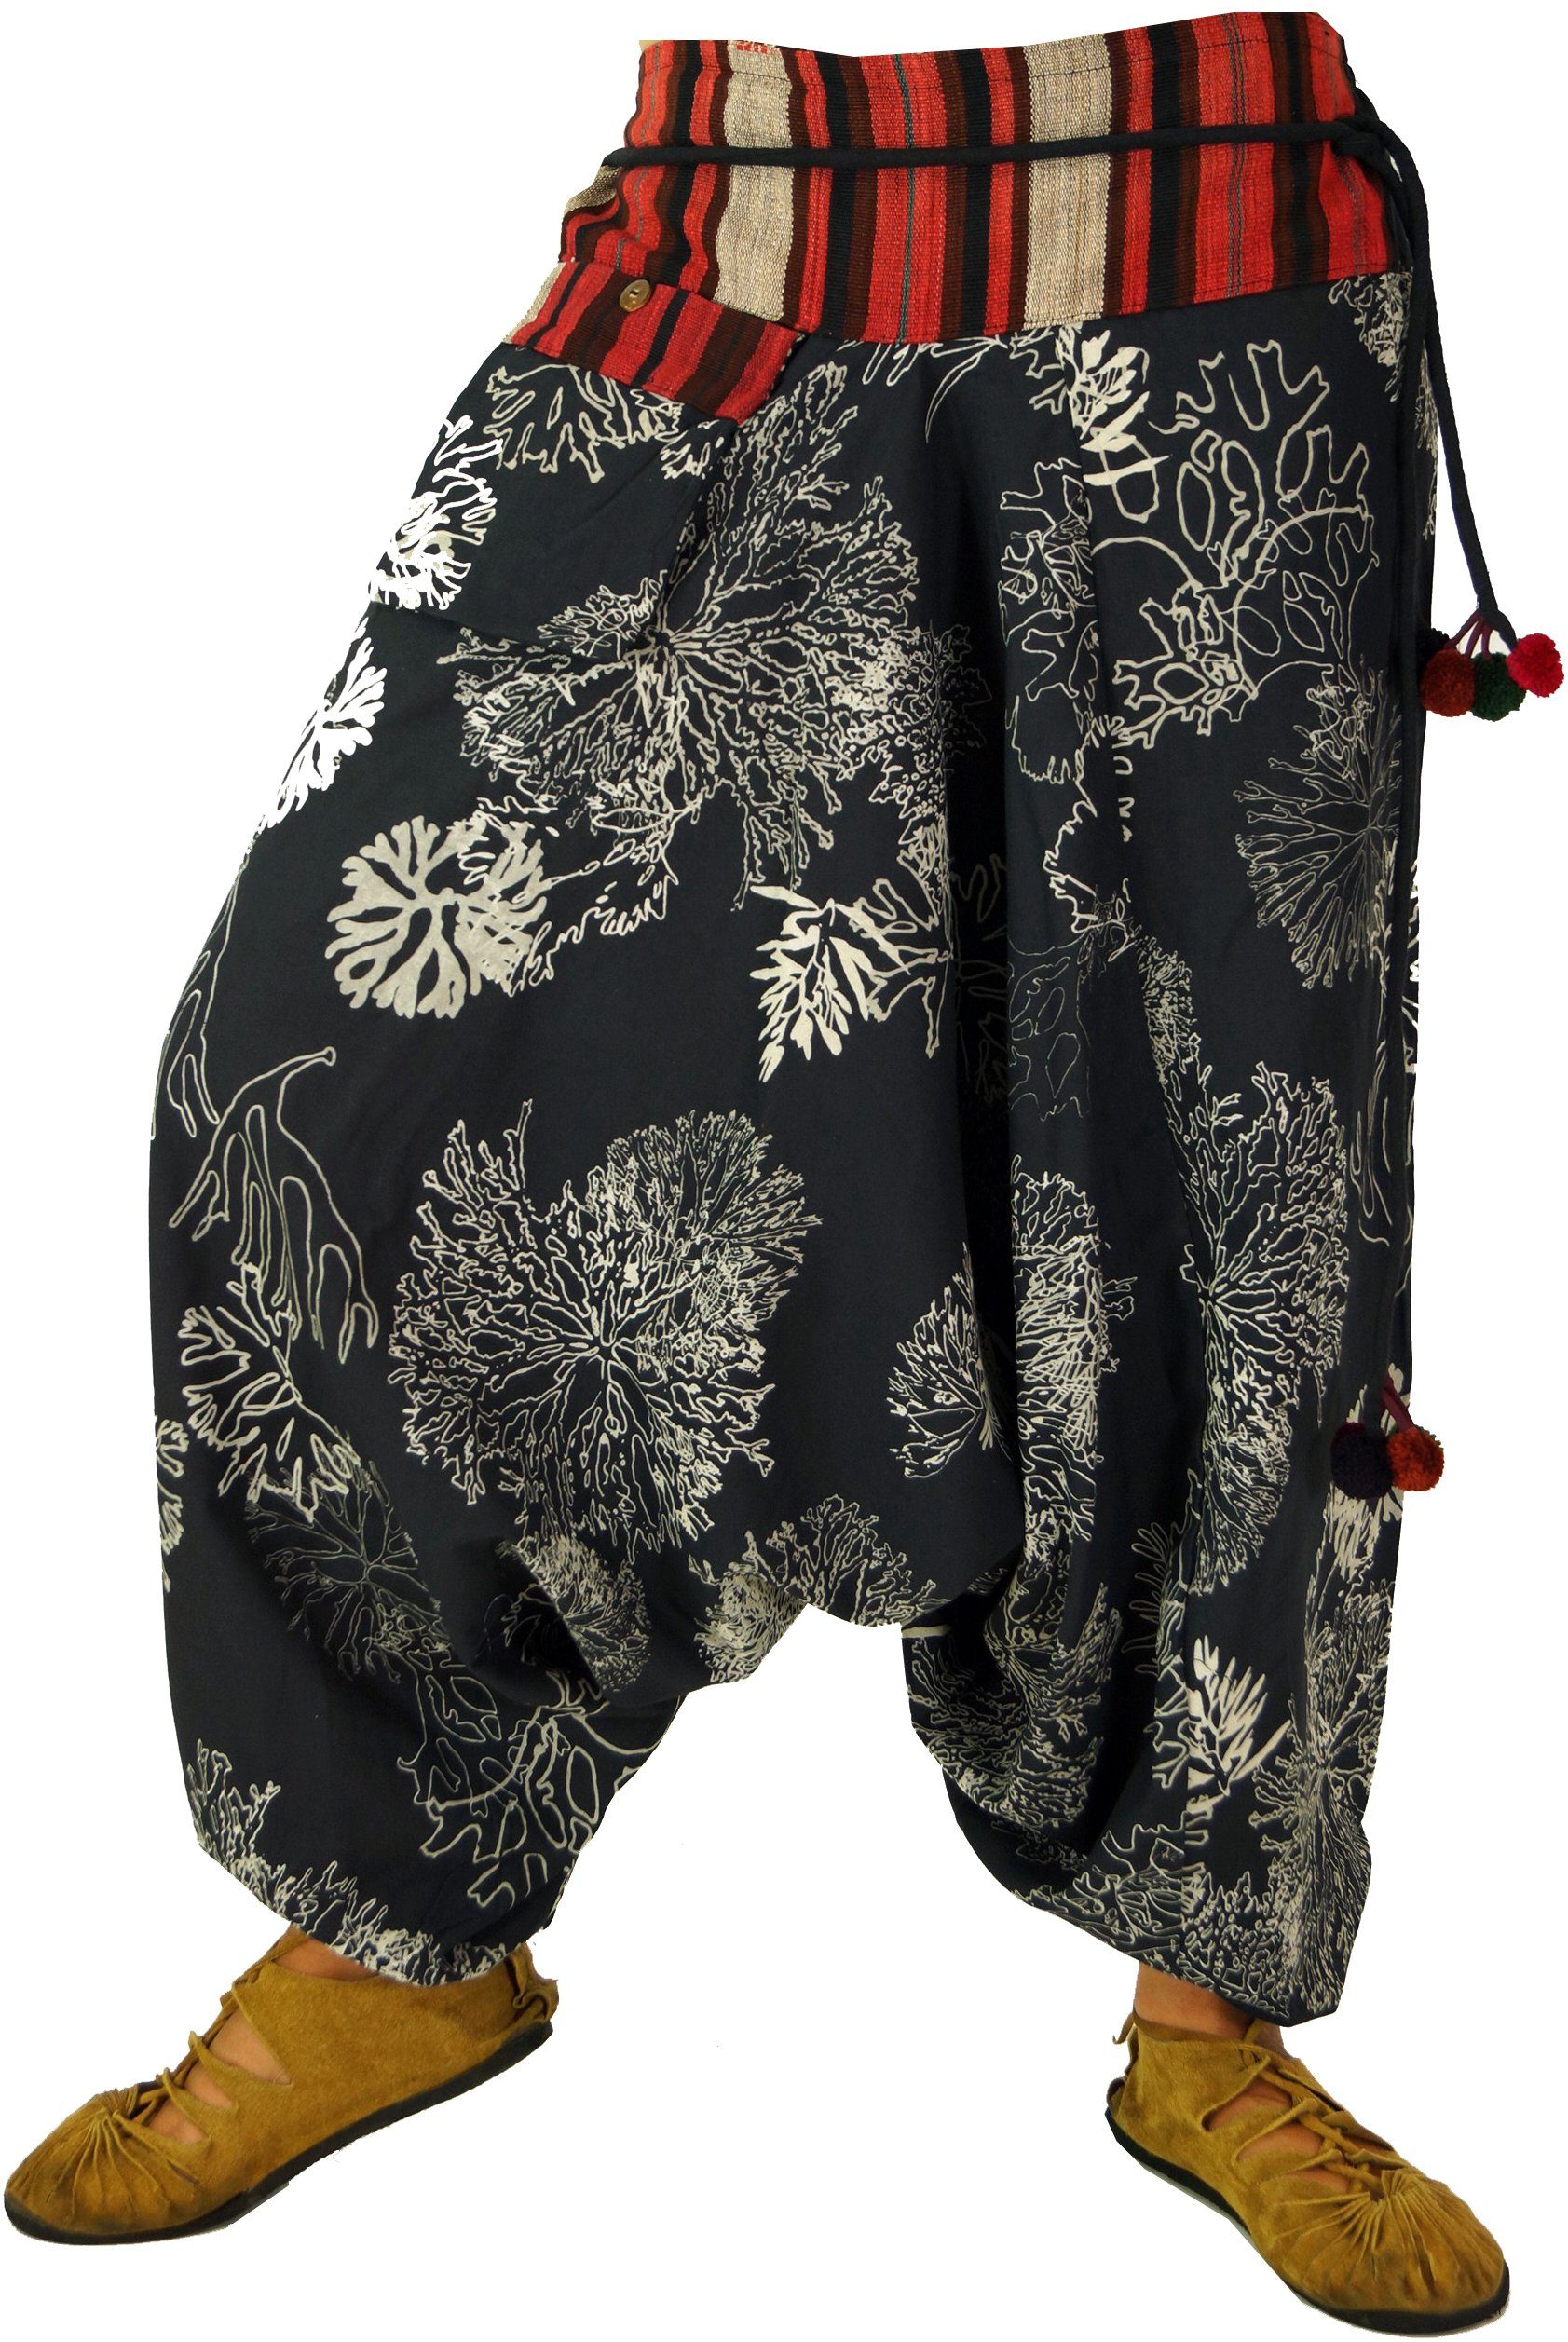 Guru-Shop Relaxhose Bedruckte Haremshose mit breitem gewebtem Bund.. Ethno Style, alternative Bekleidung